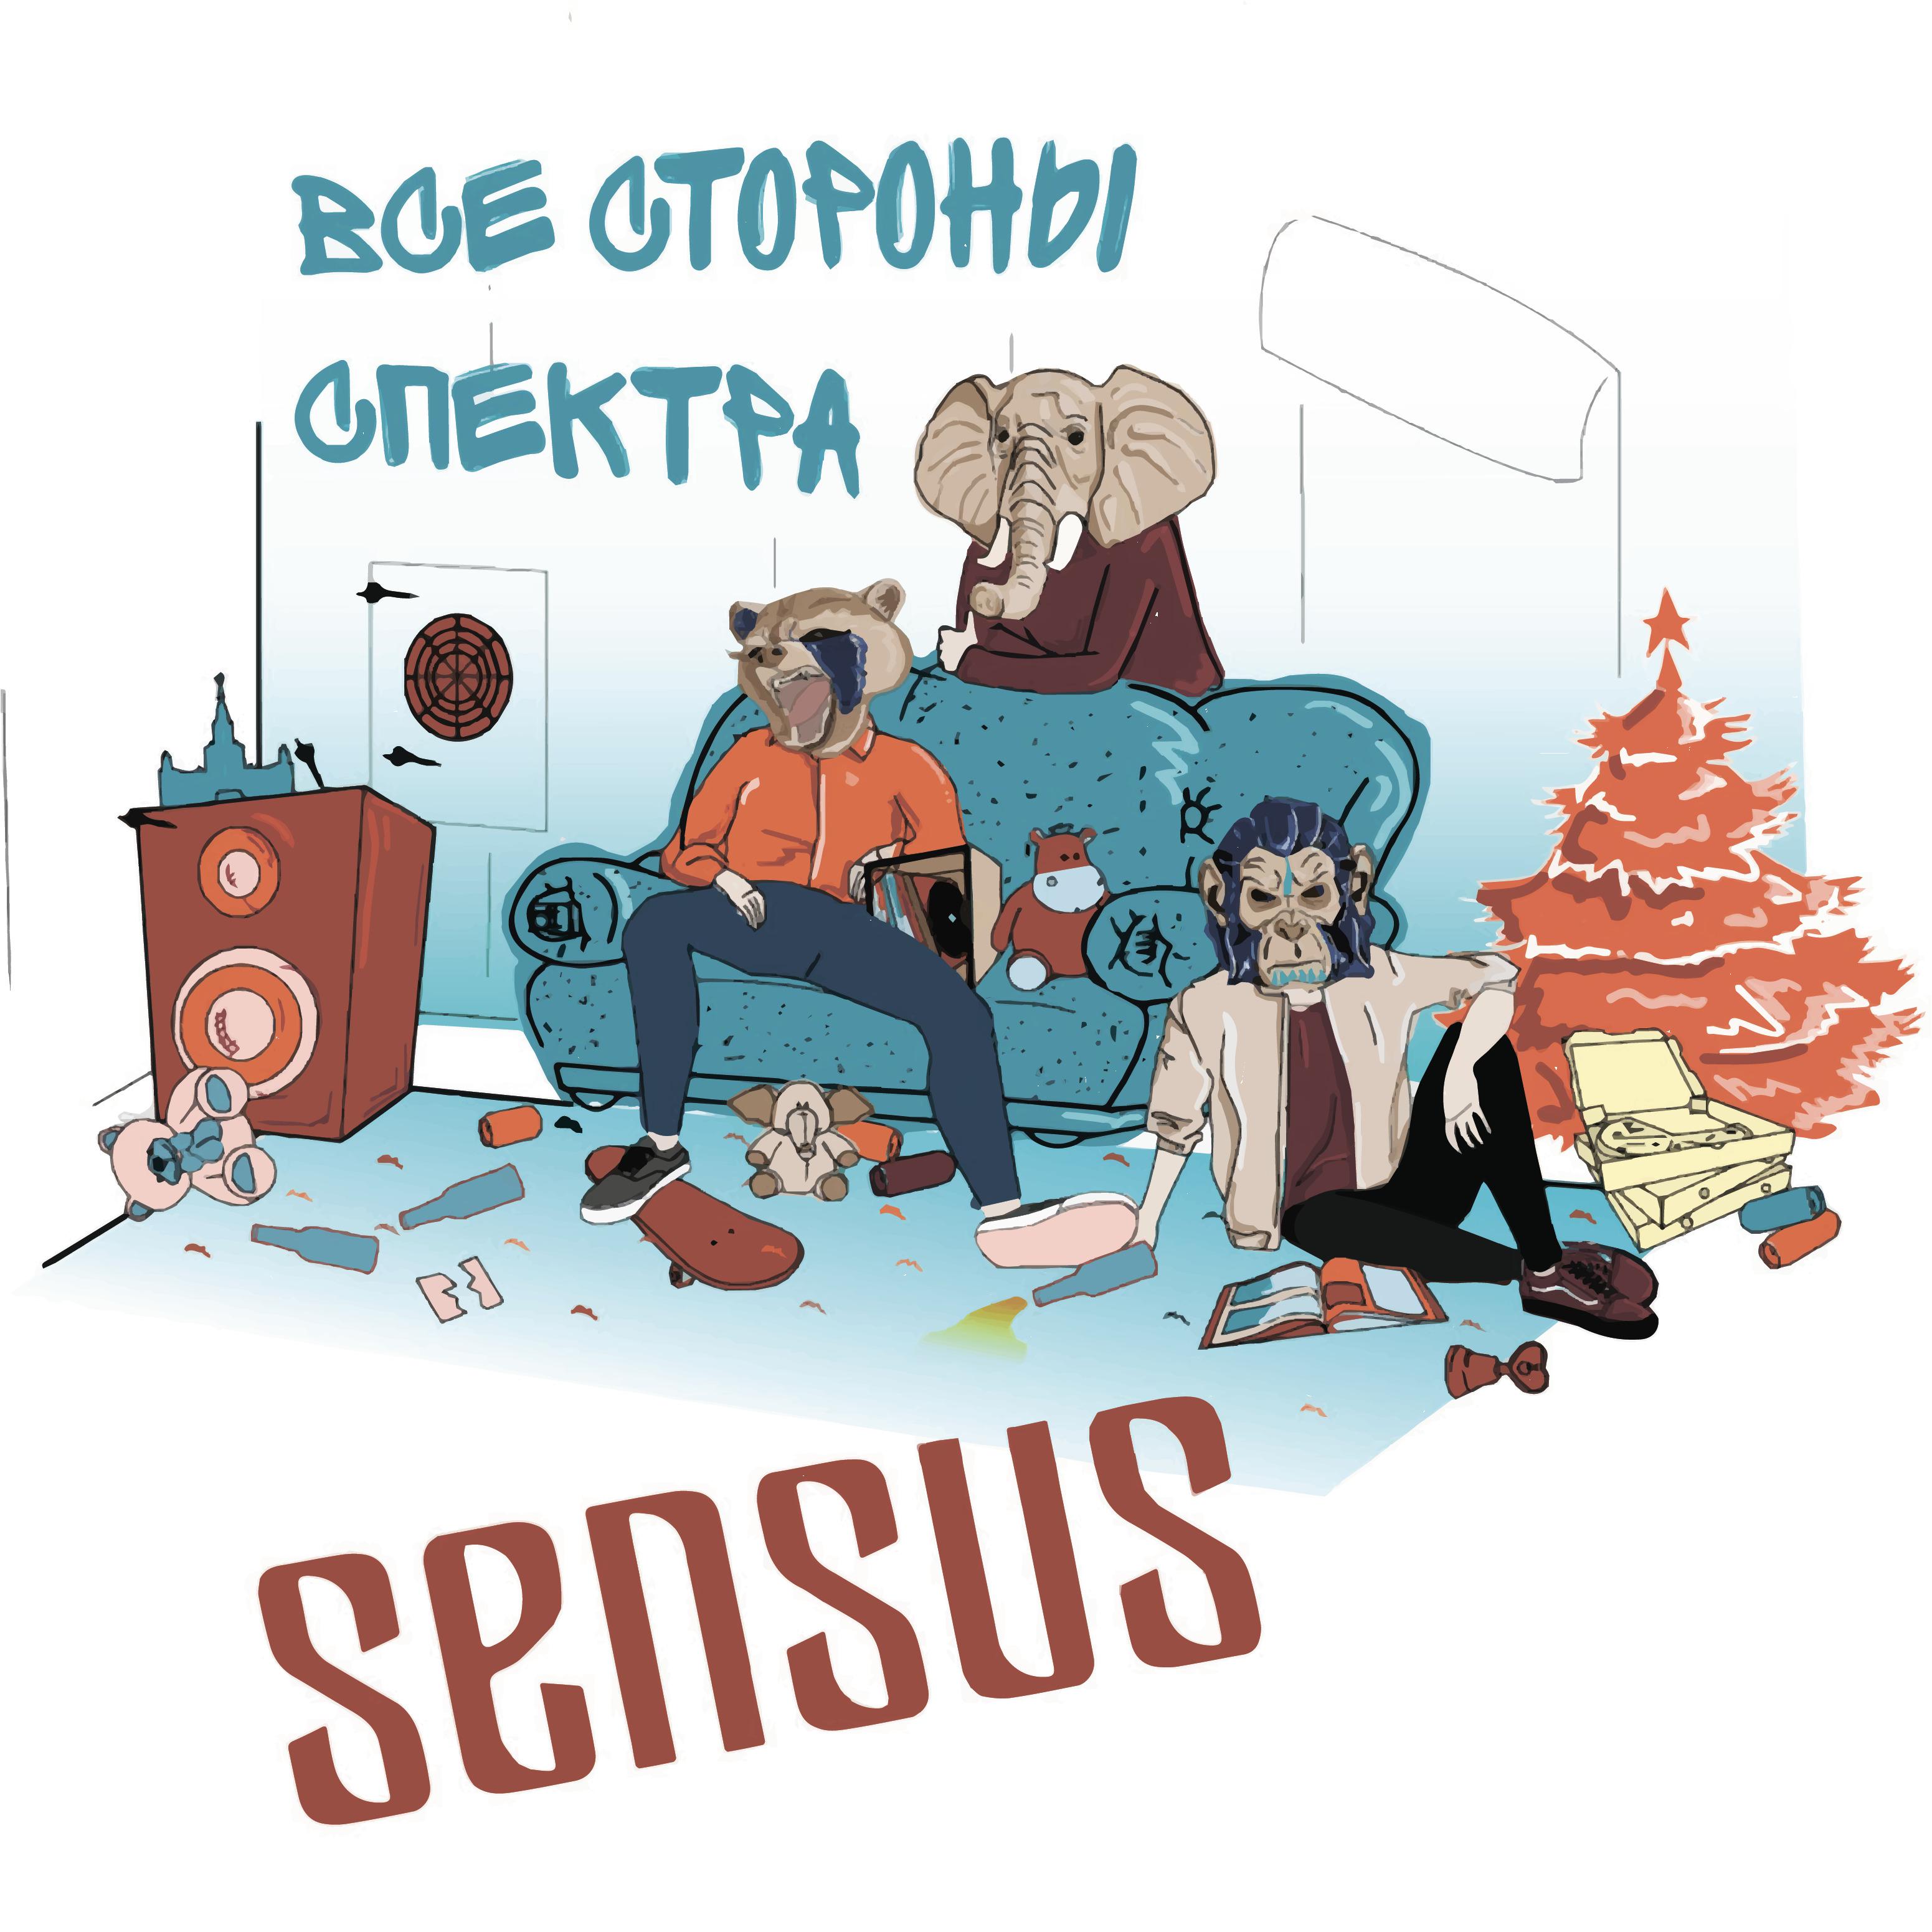 Sensus - December